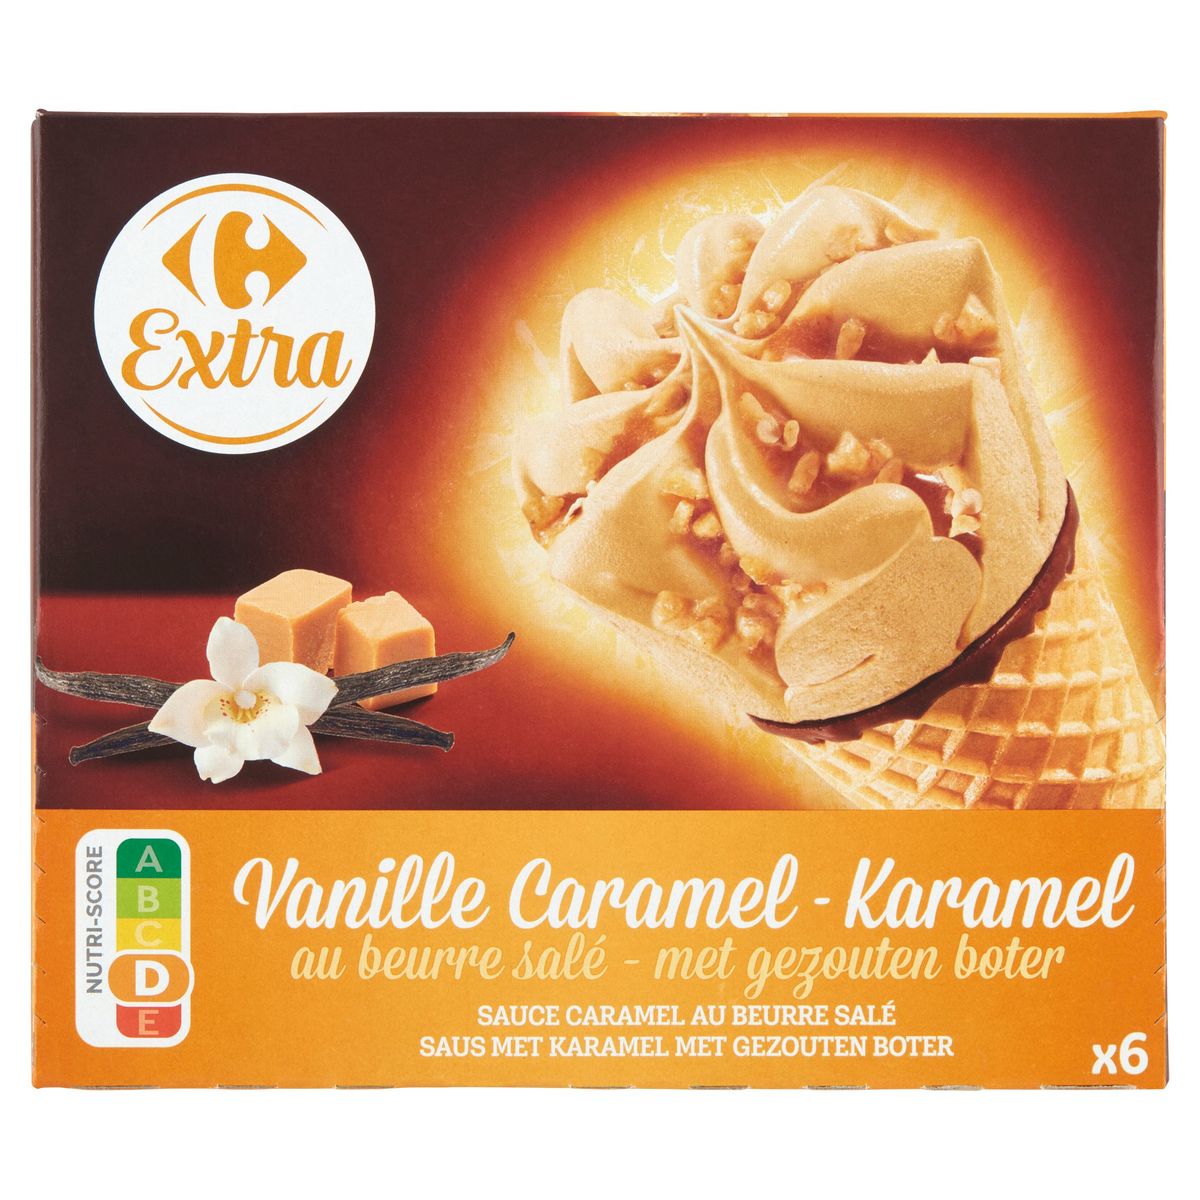 Carrefour Extra Vanille Caramel au Beurre Salé 6 Pièces 429 g